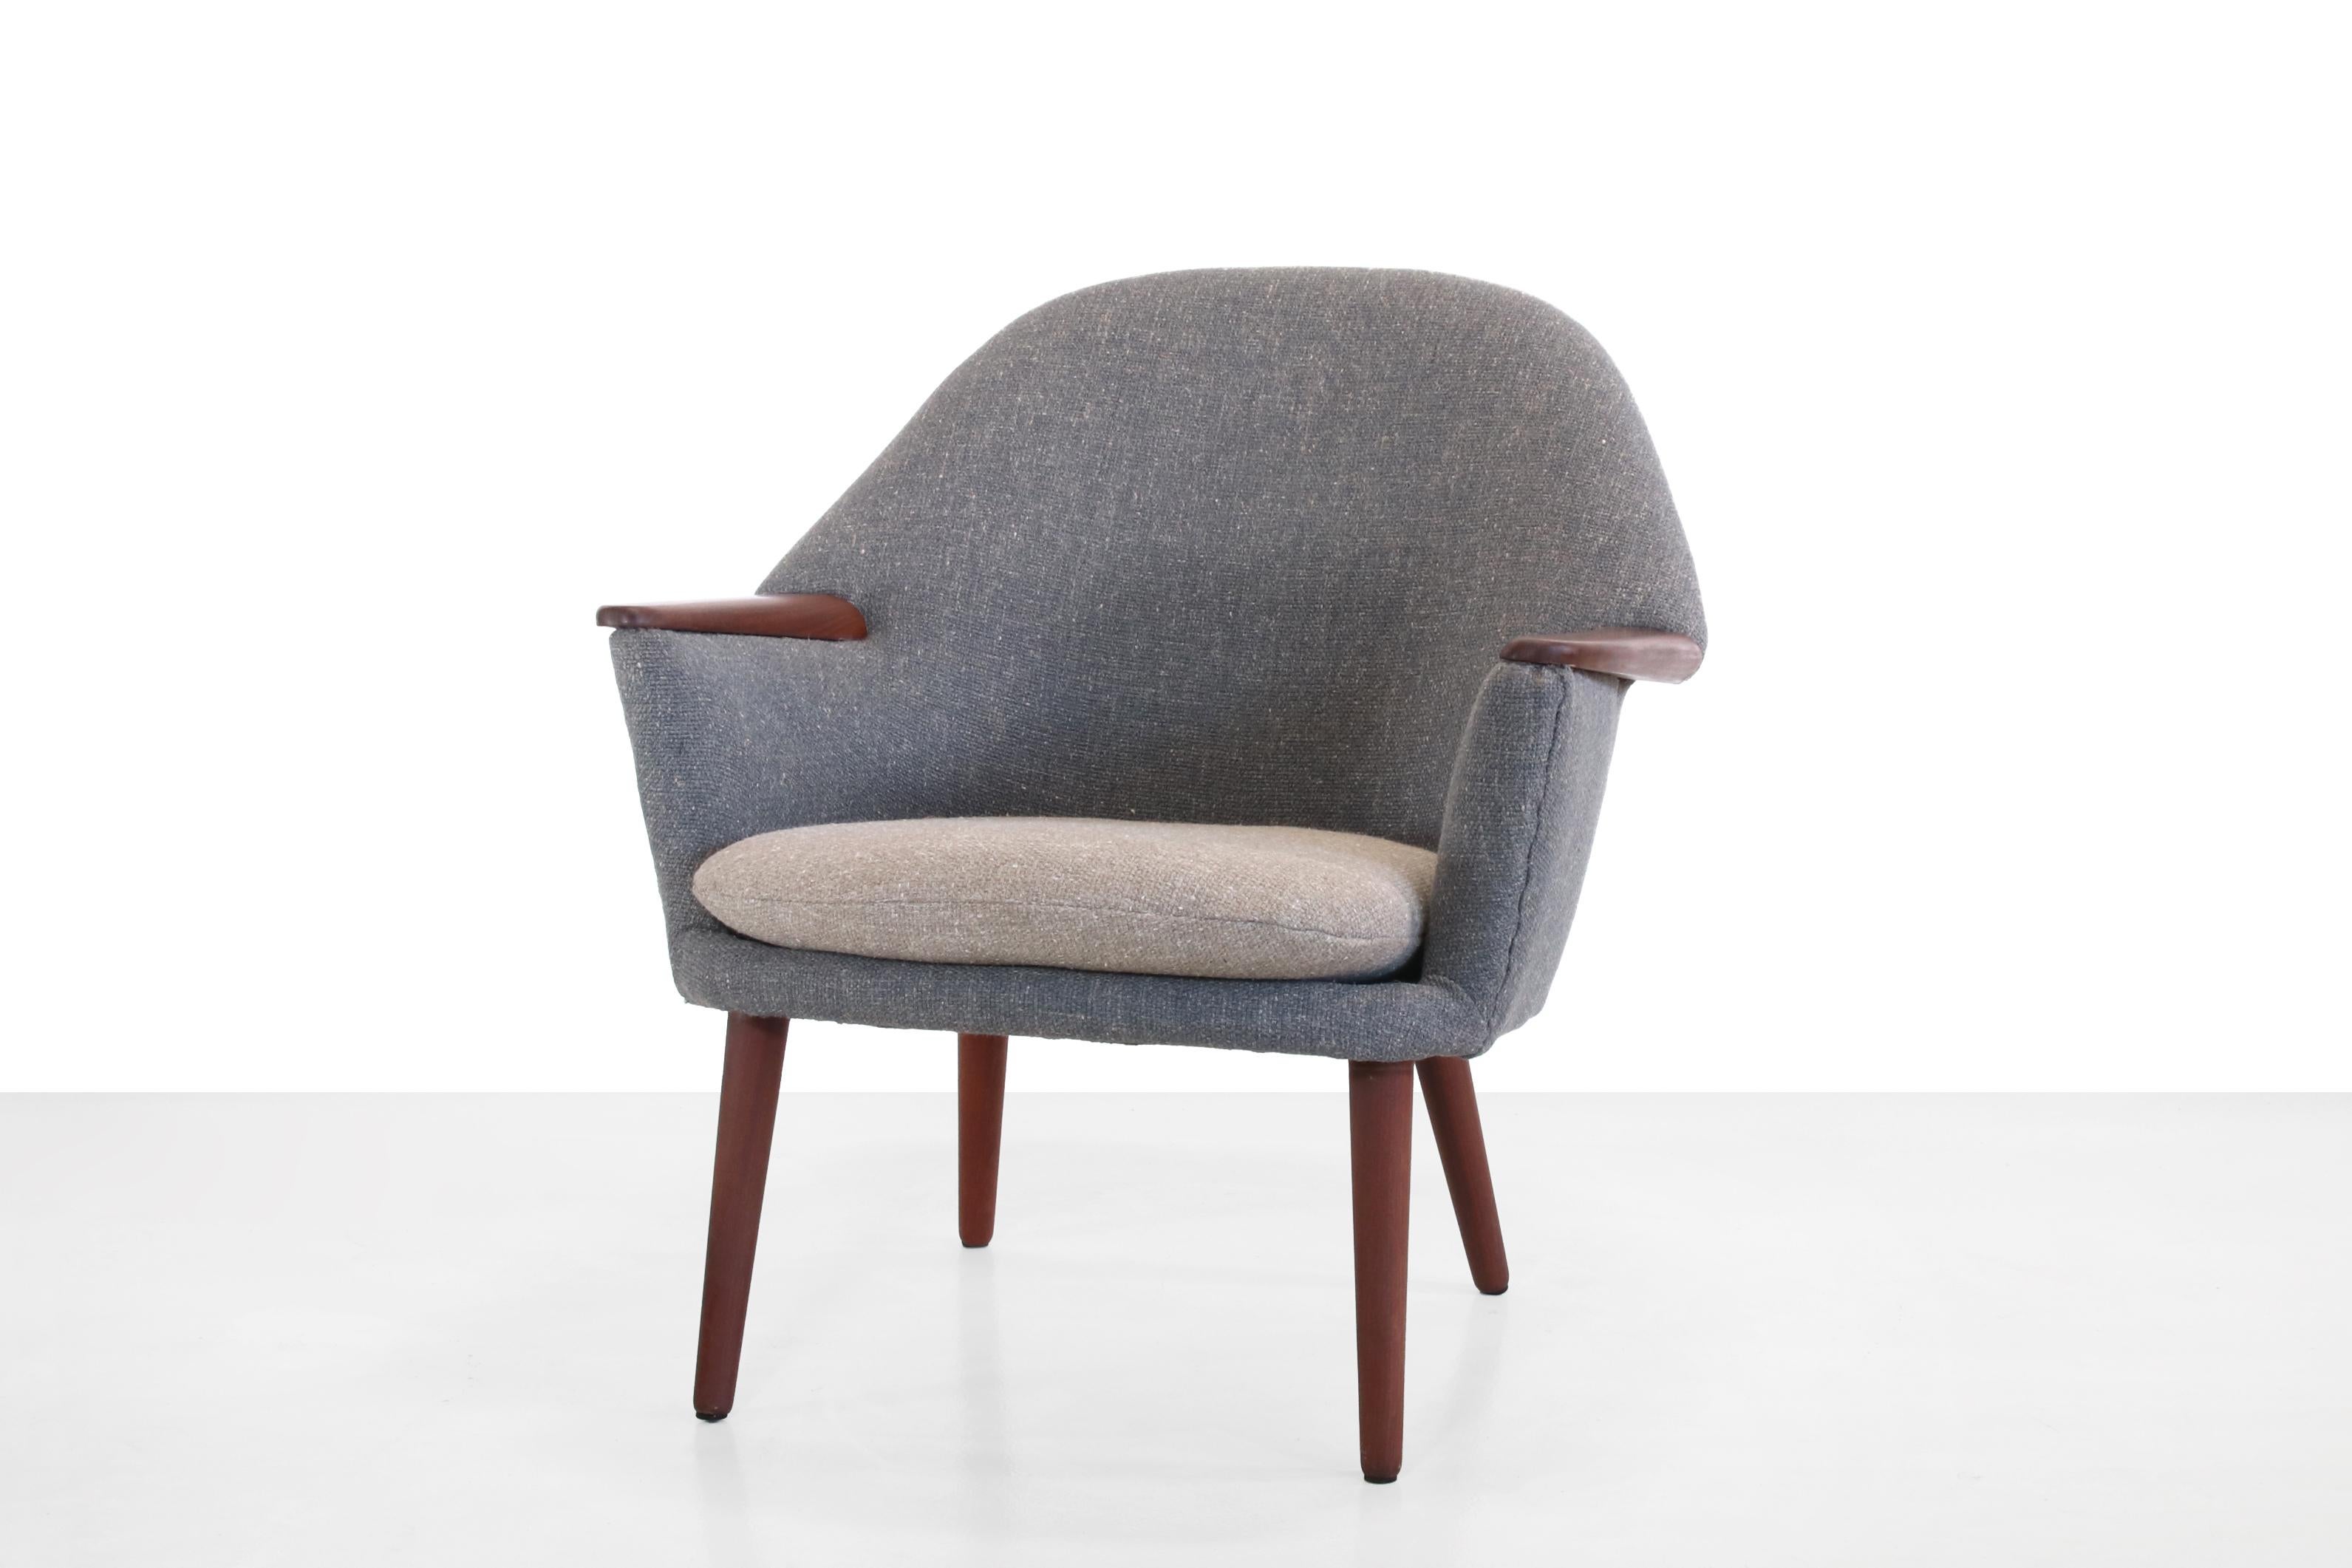 Magnifique fauteuil de design danois dans le style de Nanna Ditzel. Ce fauteuil a été retapissé en duotone dans un tissu de couleur bleu désaturé et gris chaud avec une belle structure grossière et possède des pieds et des accoudoirs en teck massif.